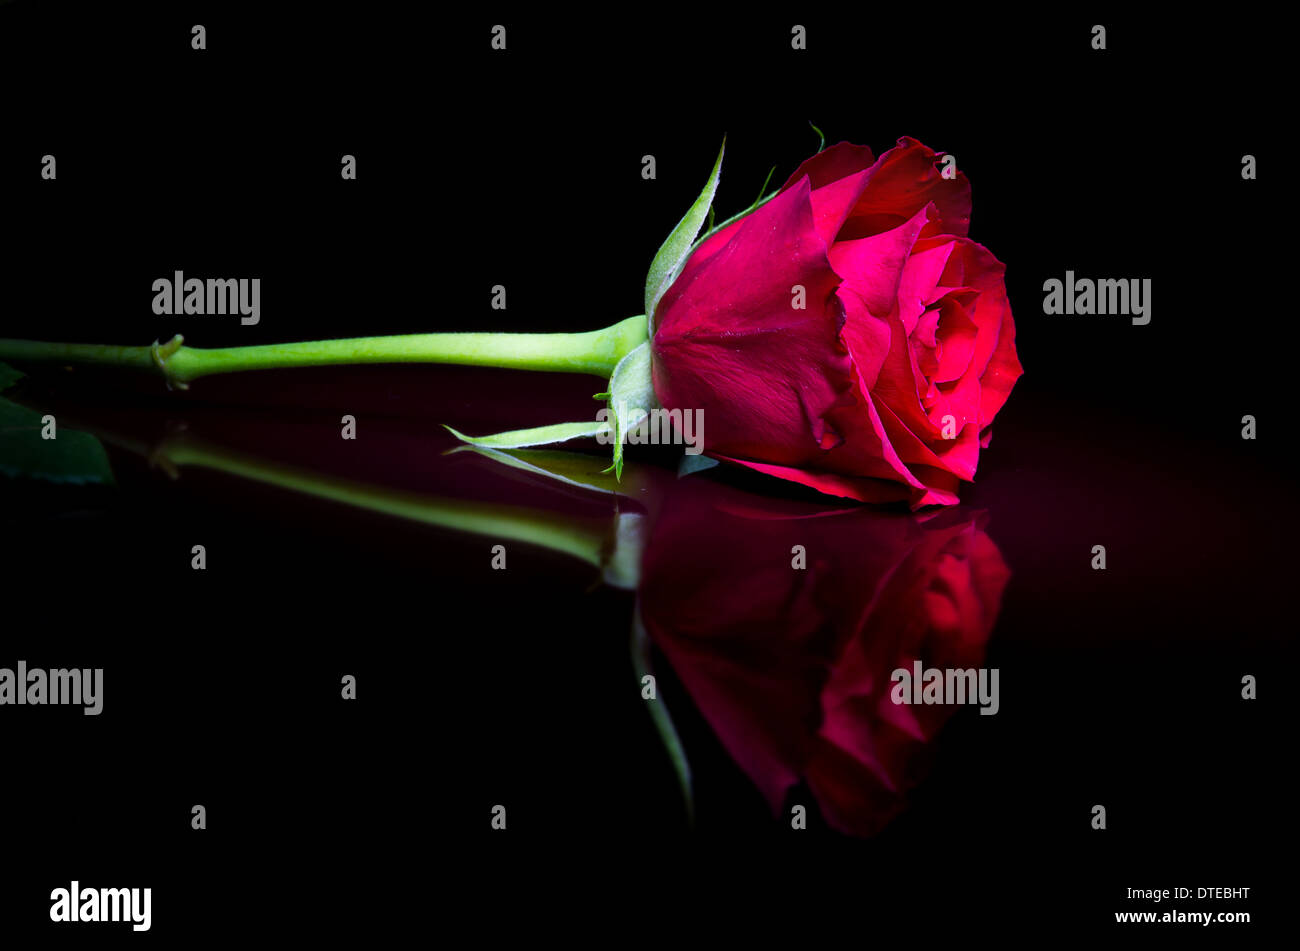 Die Valentine einzelne rote Rose. Schön einfach, romantisch und minimale Porträt dieser wunderschönen Blume. Stockfoto